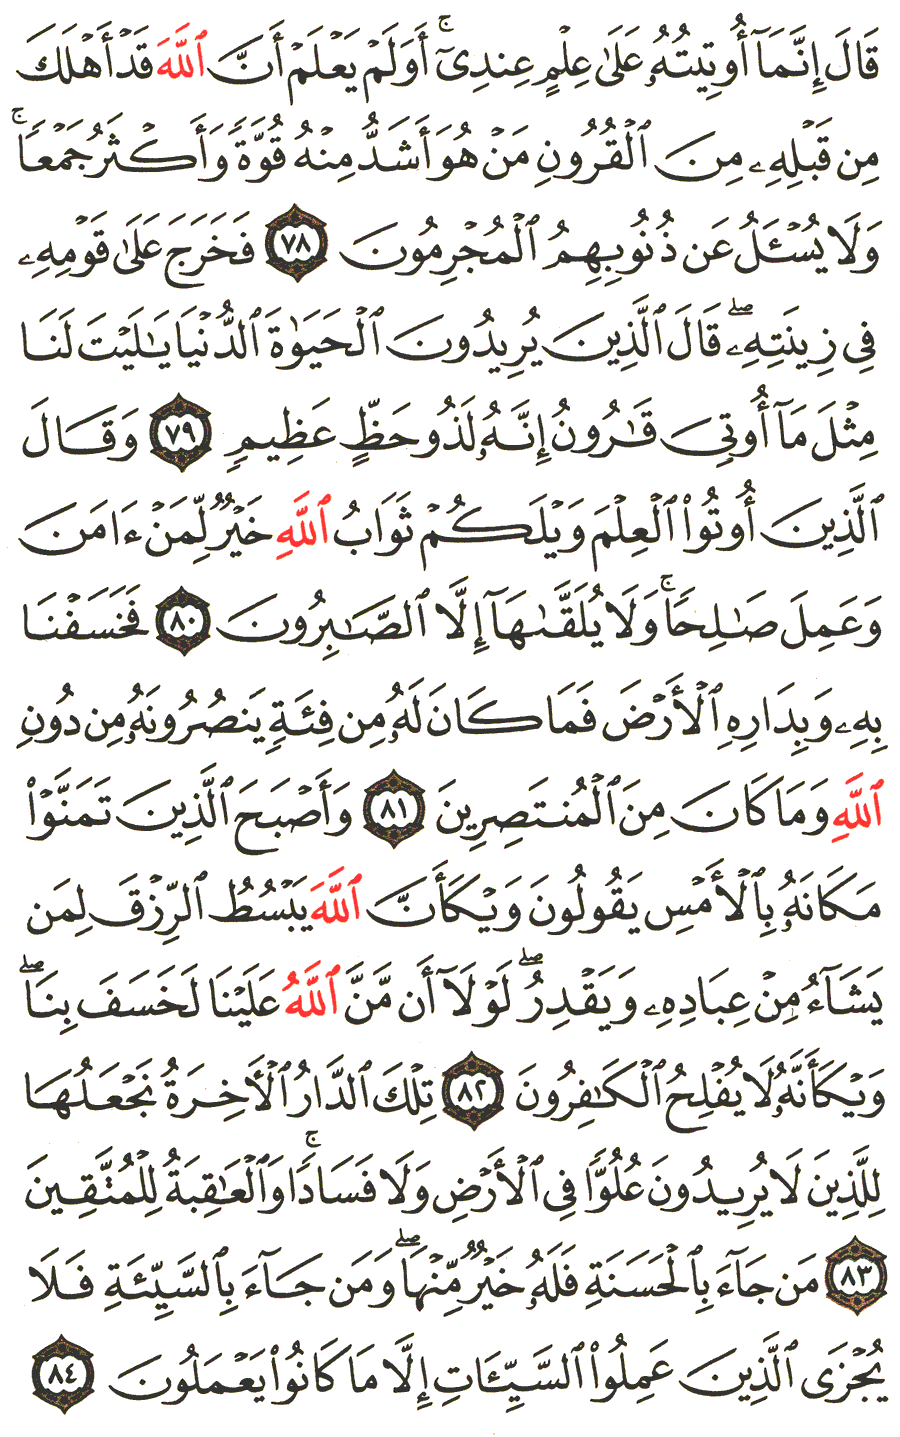 الصفحة رقم 395  من القرآن الكريم مكتوبة من المصحف